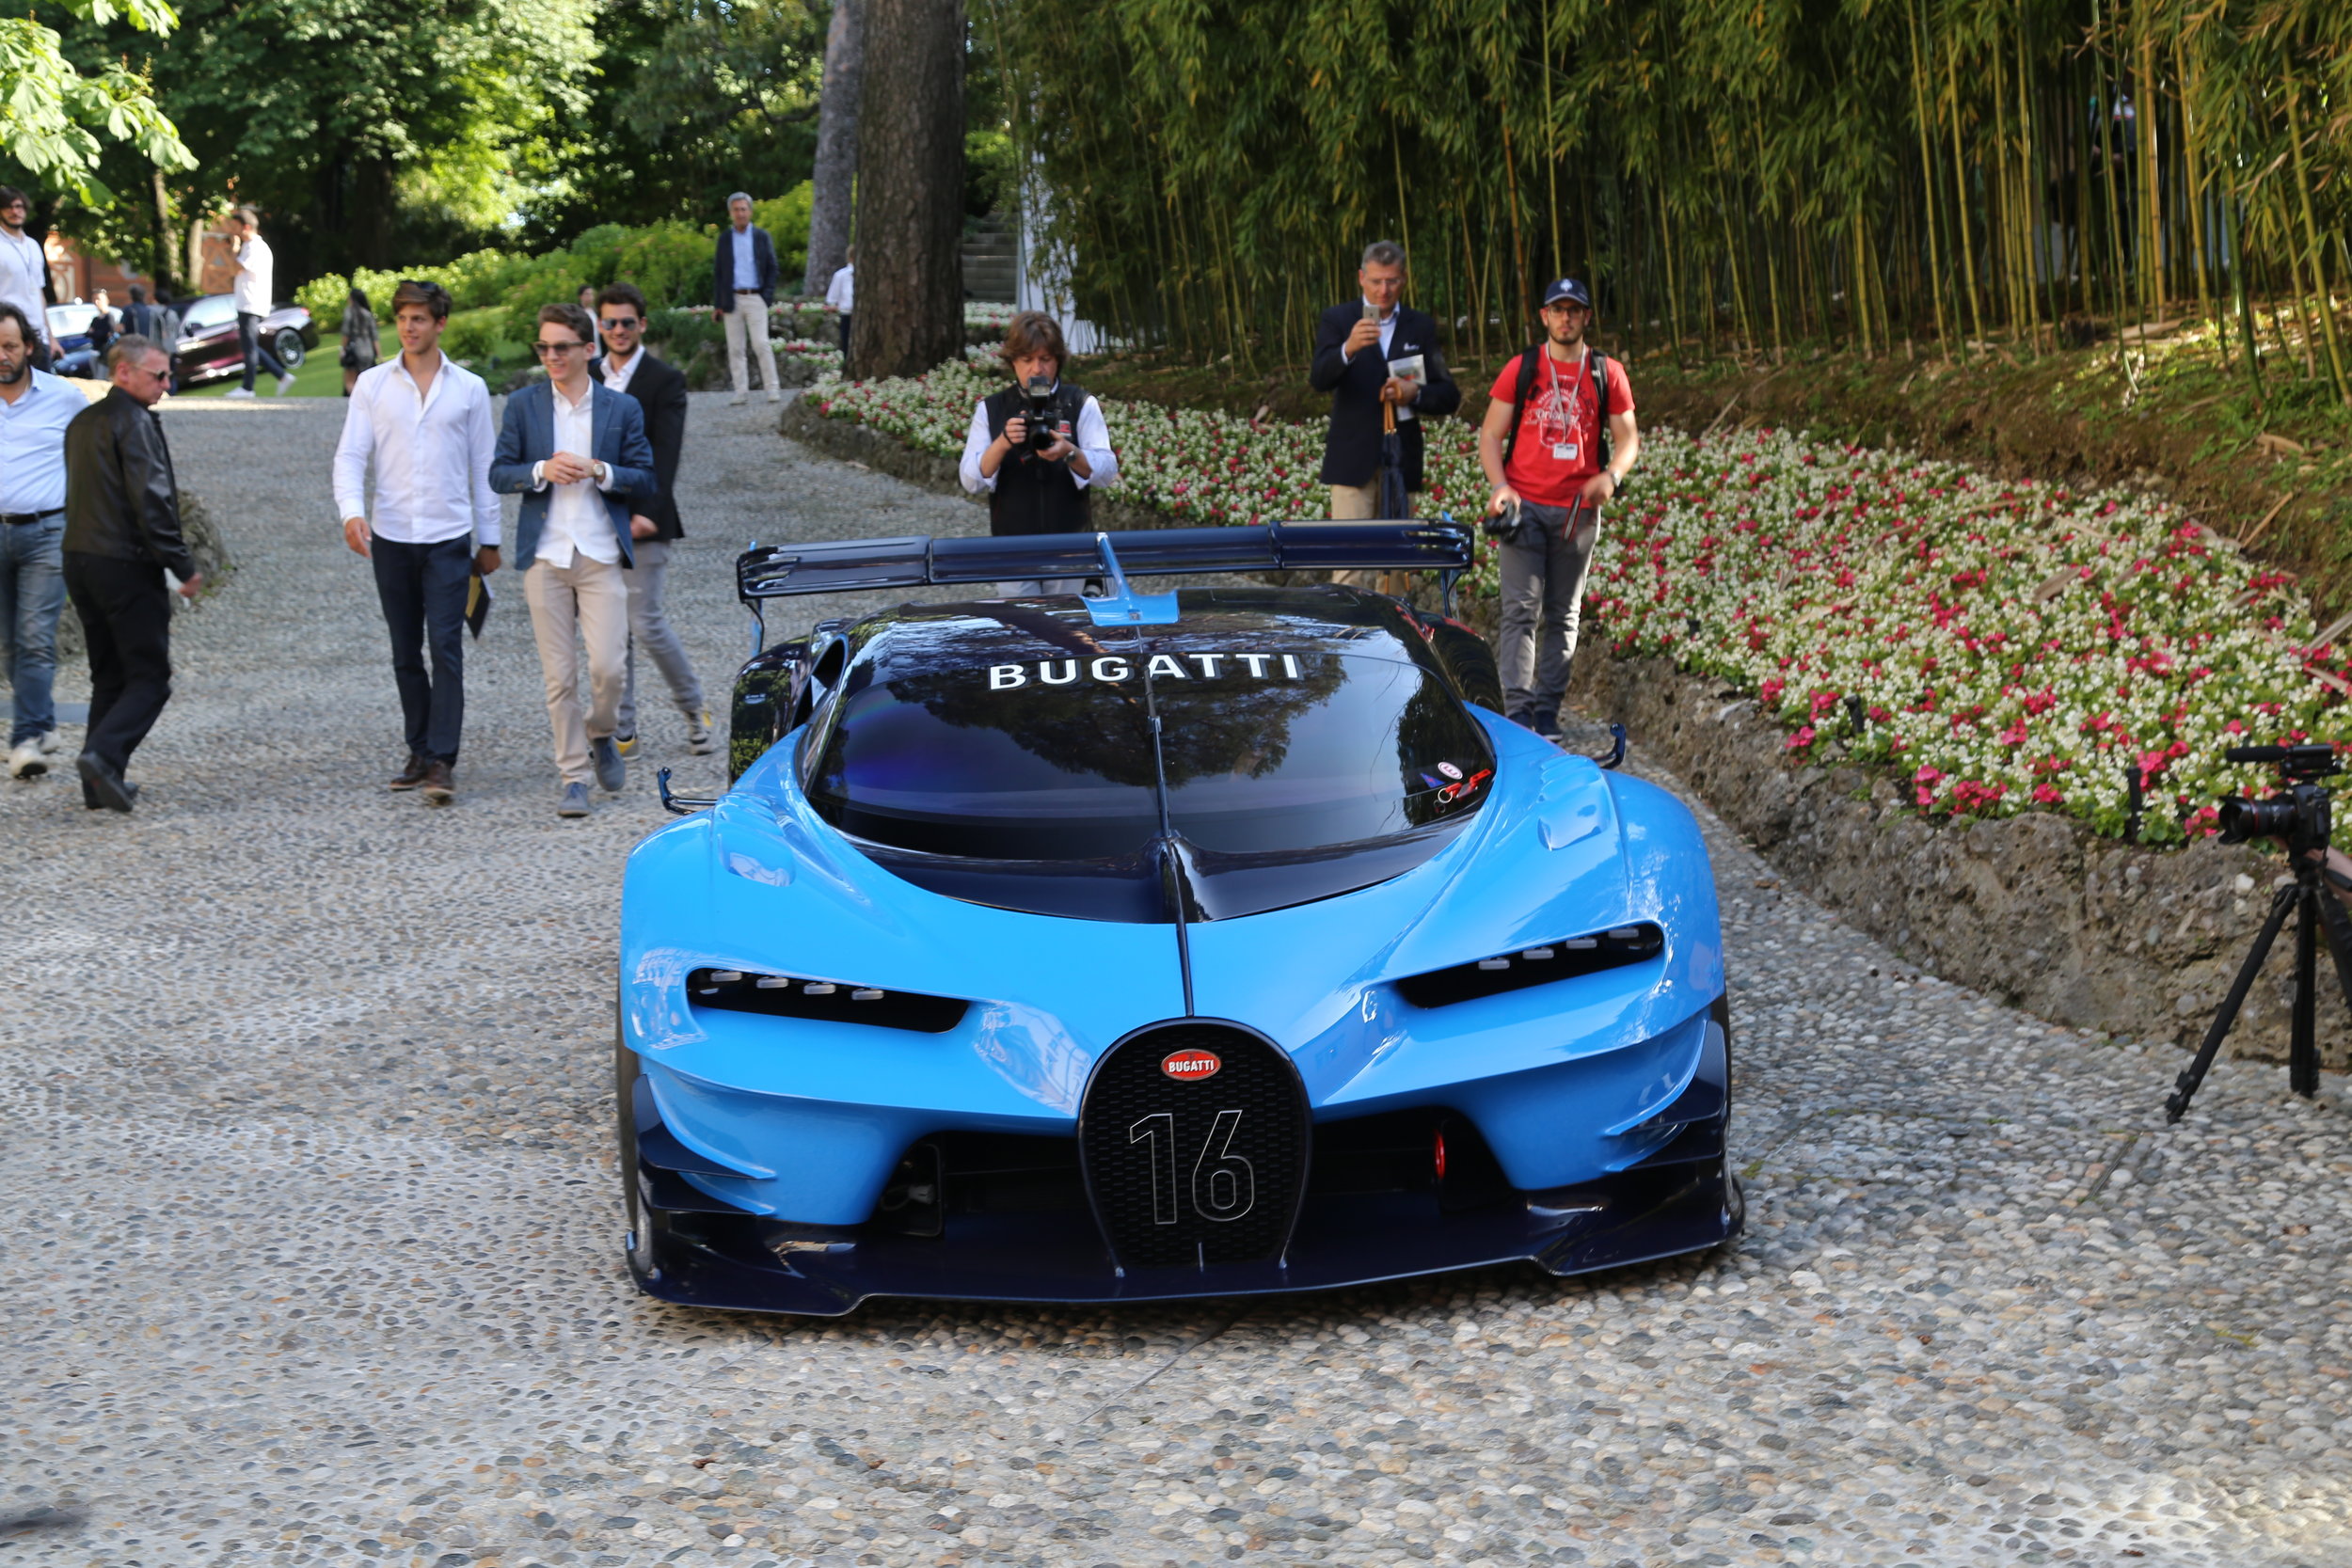 — Bugatti Gran Vission Turismo Macchina Darragh